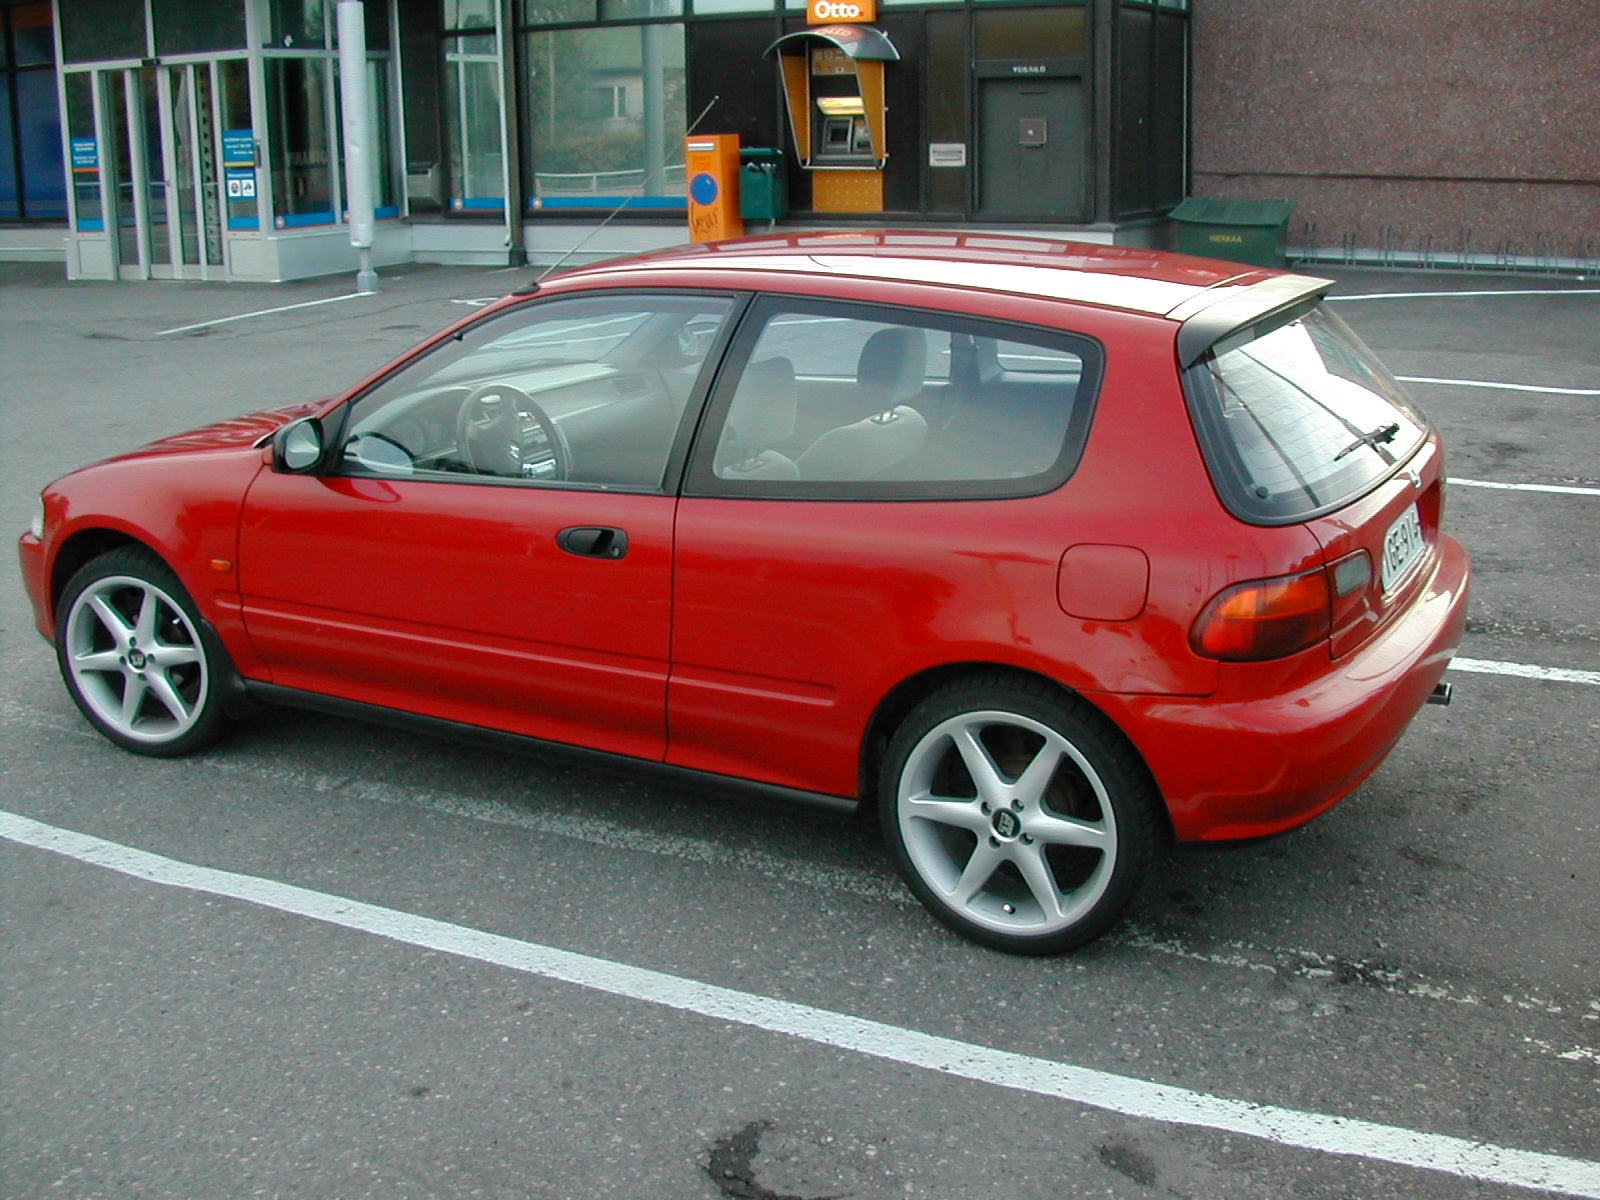 Honda civic hatchback 1993 pics